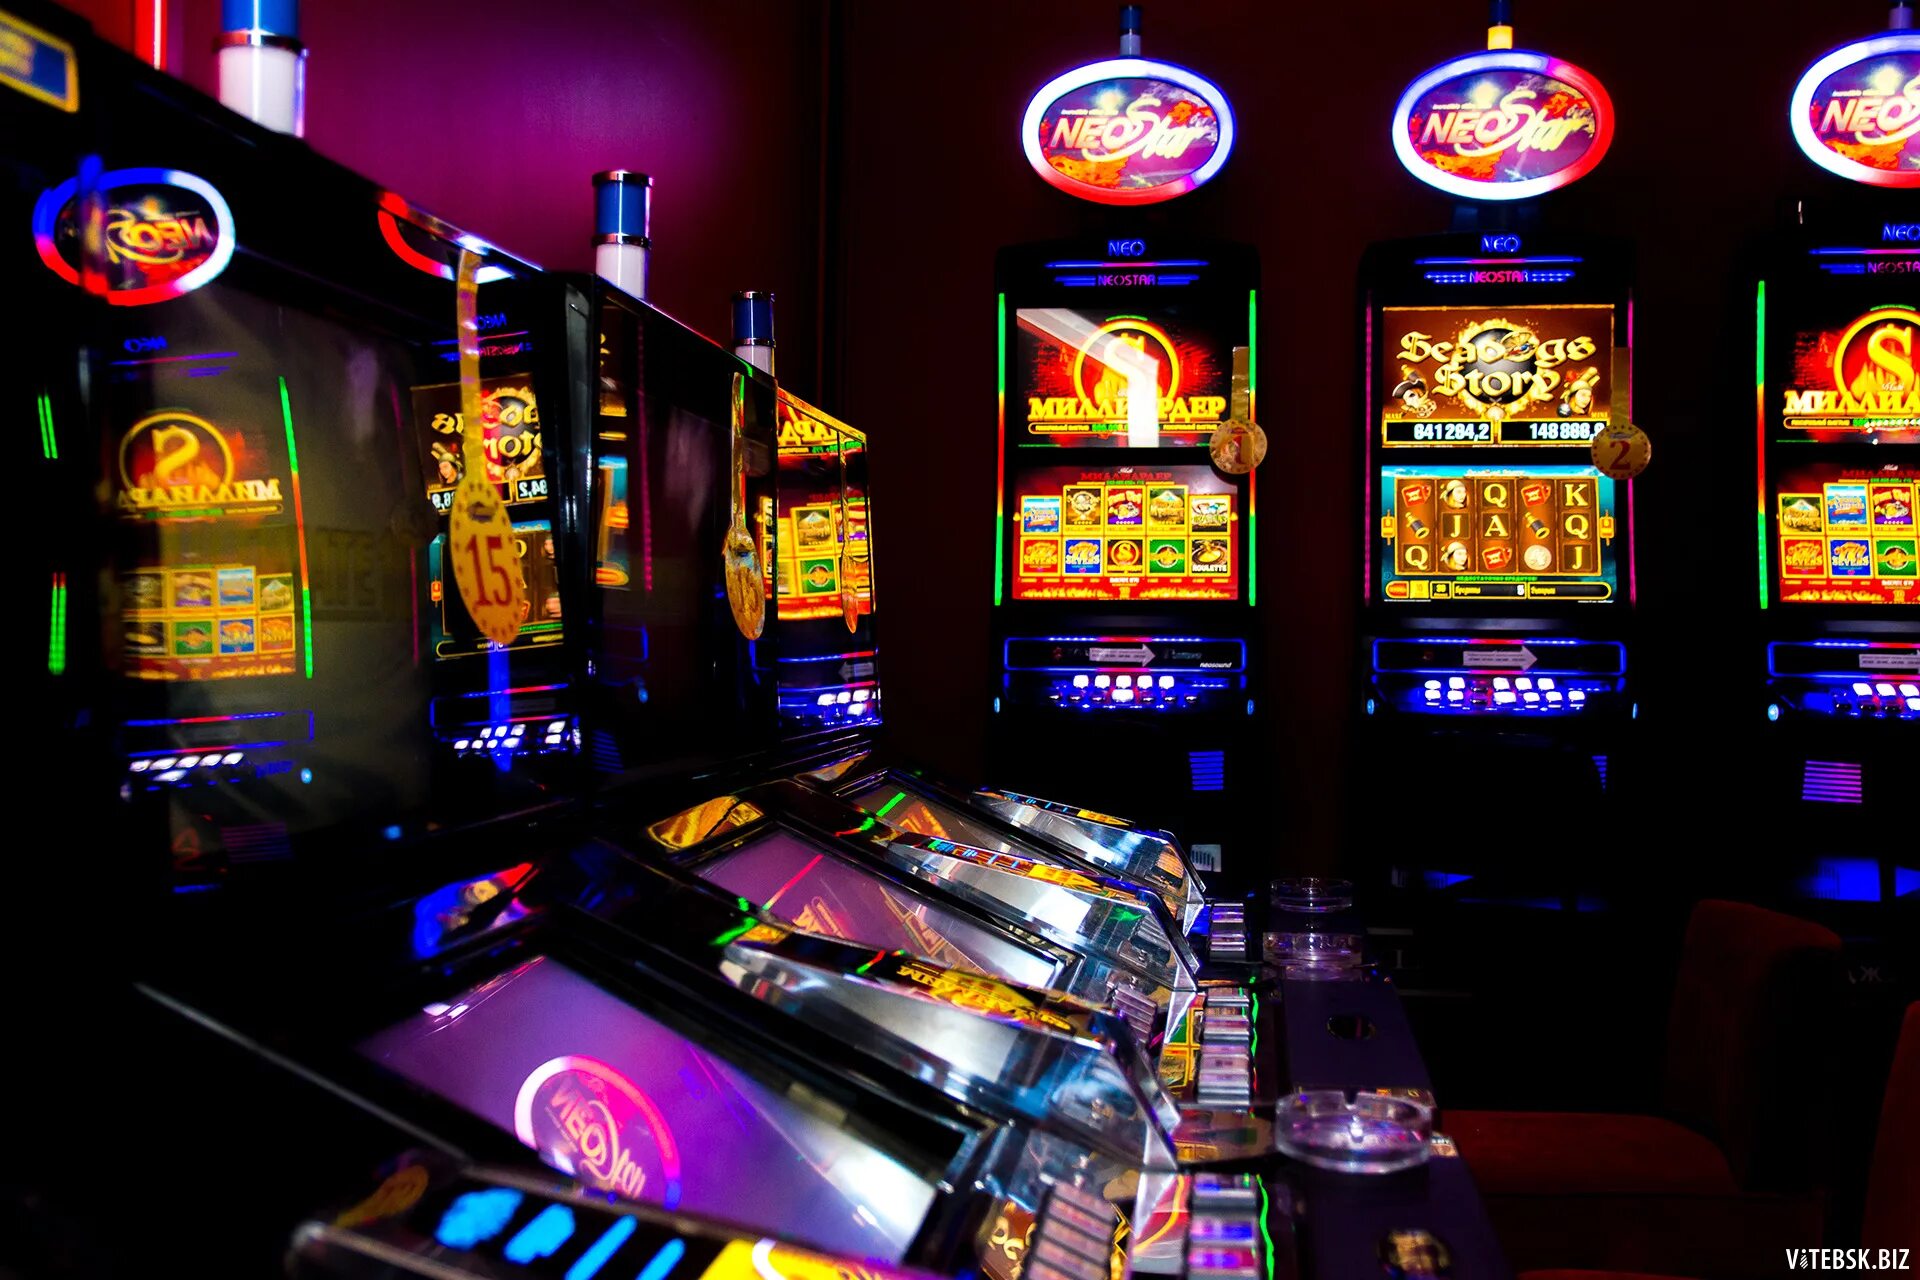 Игровые автоматы с хорошей отдачей casinodb5. Слотосфера игровые автоматы казино. Игровой зал 777 зал популярных игровых аппаратов. Азартные игровые автоматы гаминатор. Название игровых автоматов.